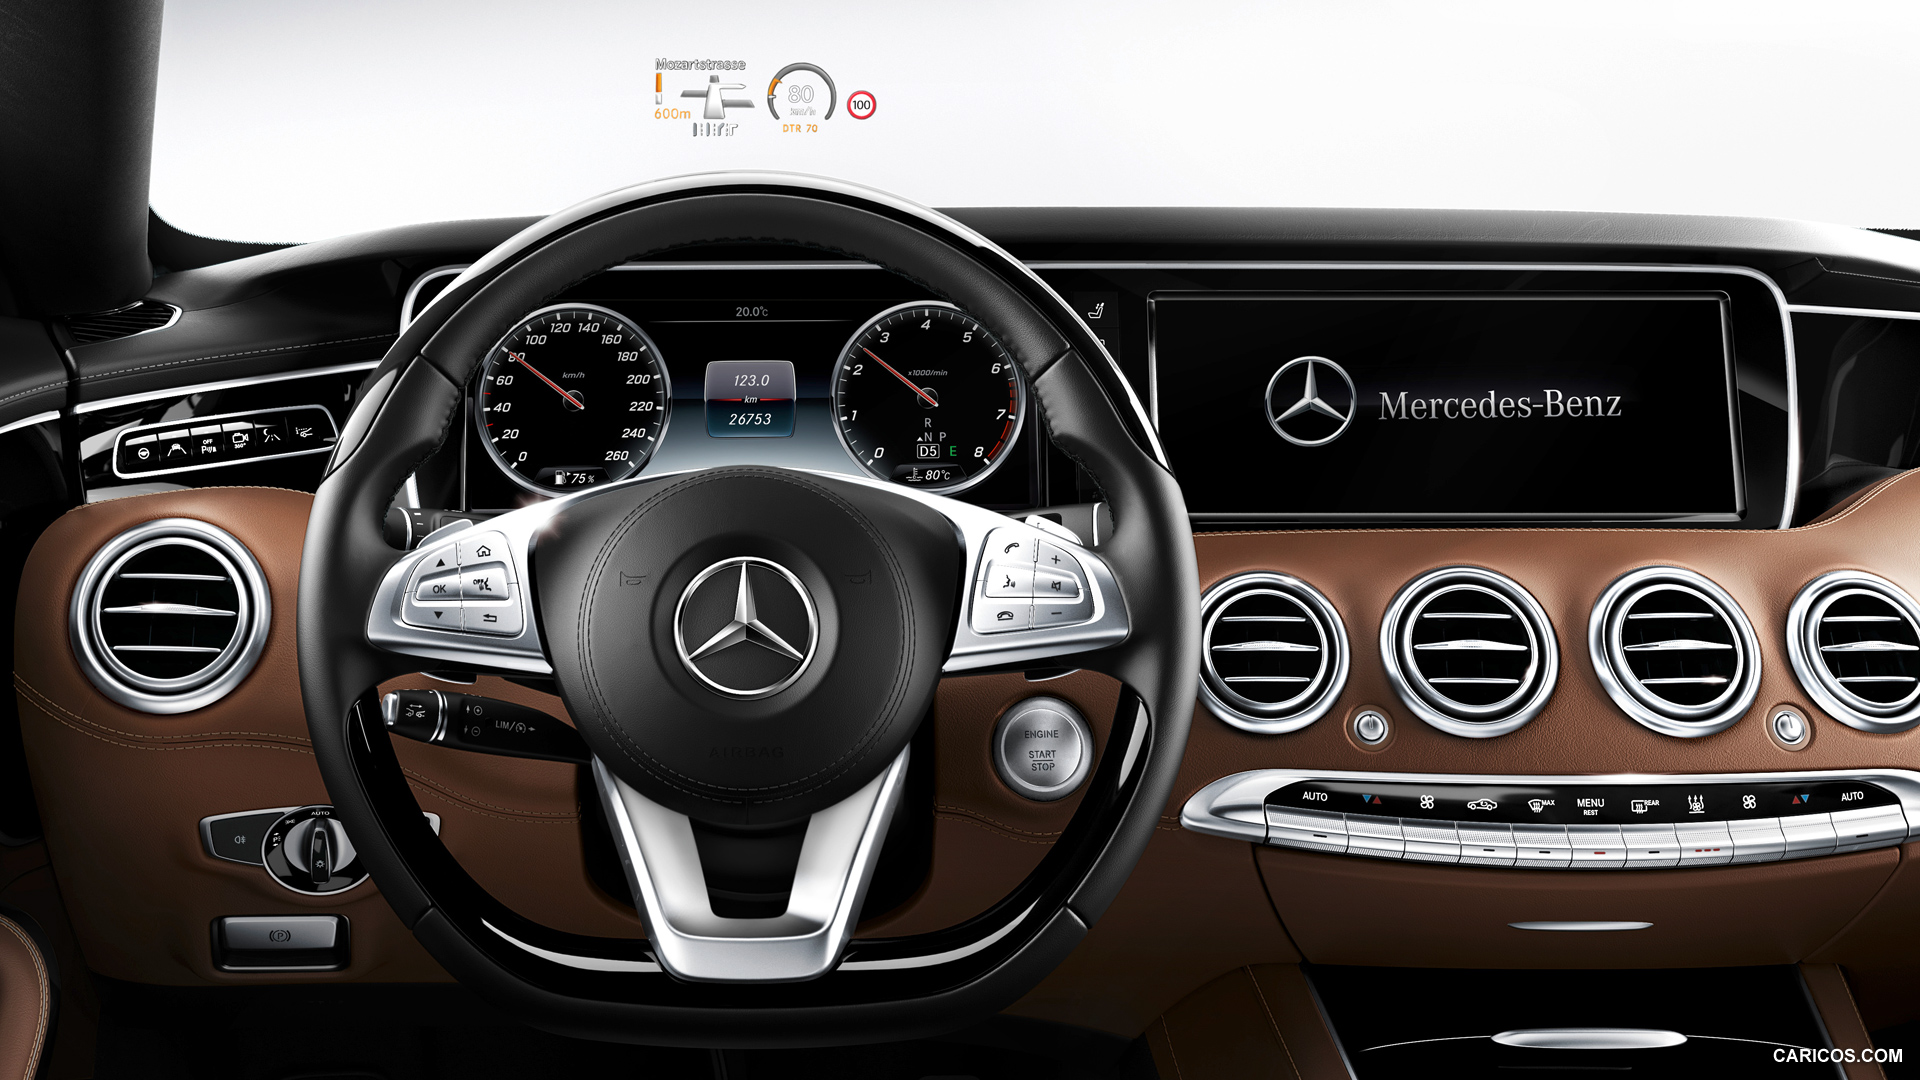 Mercedes Benz 2015 Models